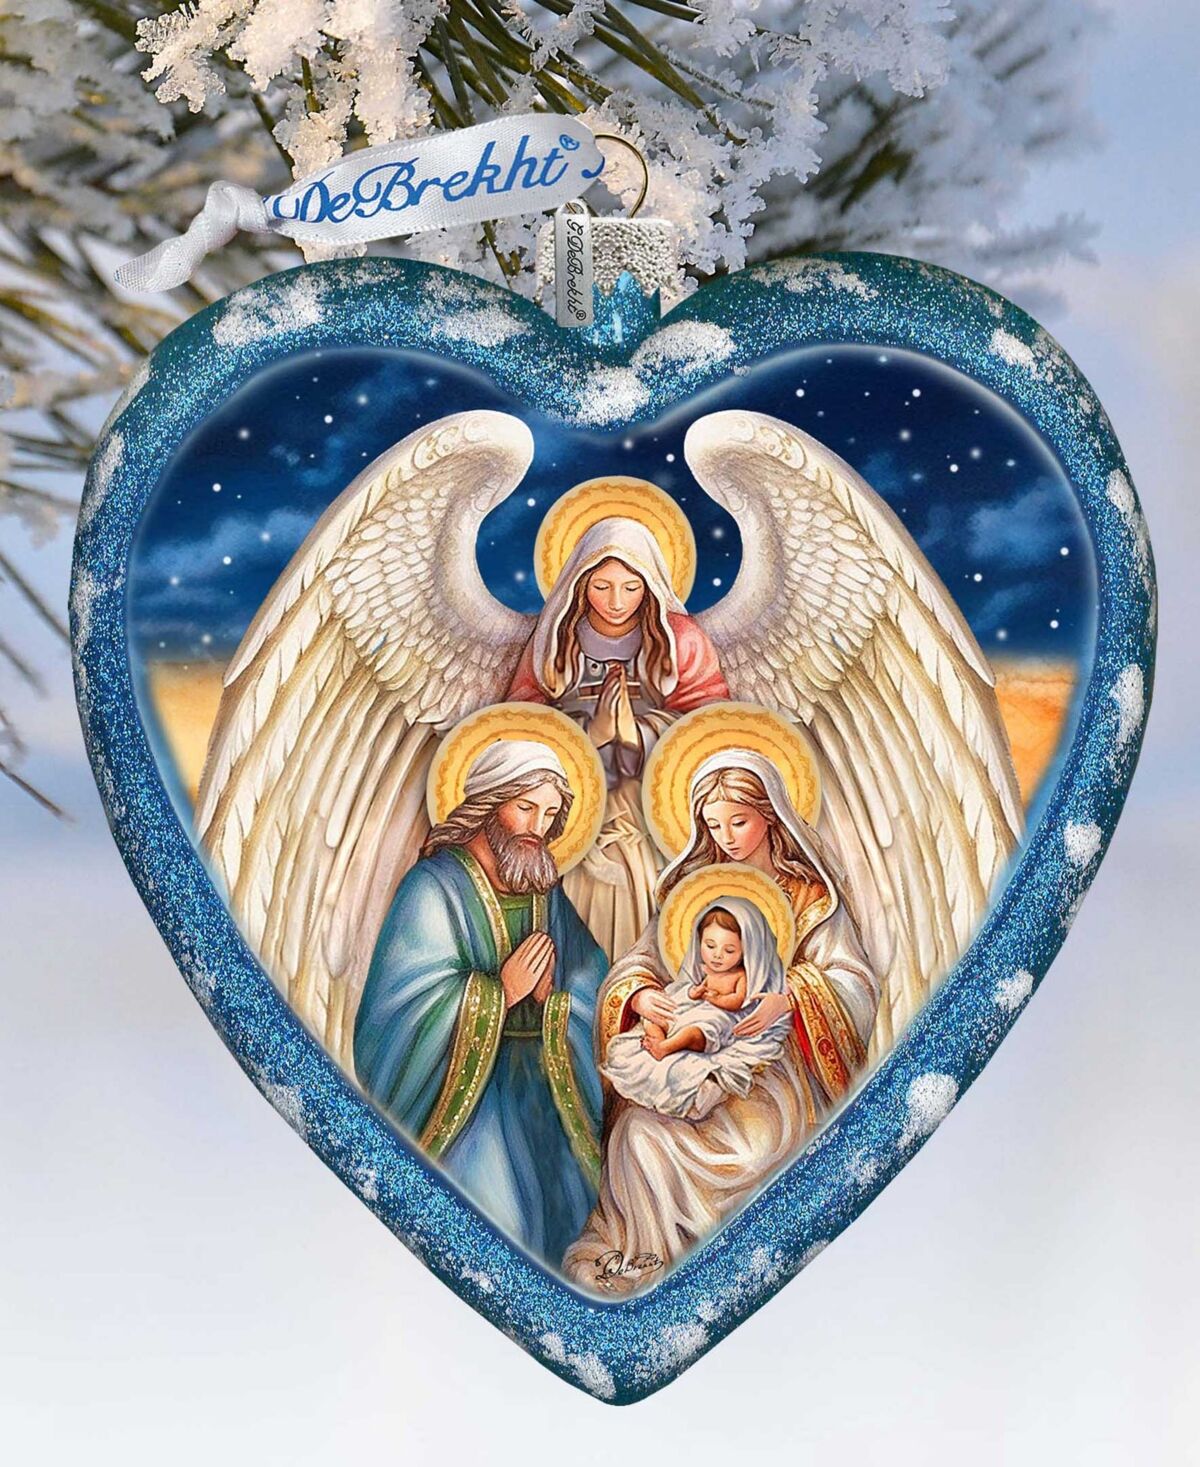 Designocracy Angel's Divine Presence Nativity Heart Lg Collectible Ornaments G. DeBrekht - Multi Color